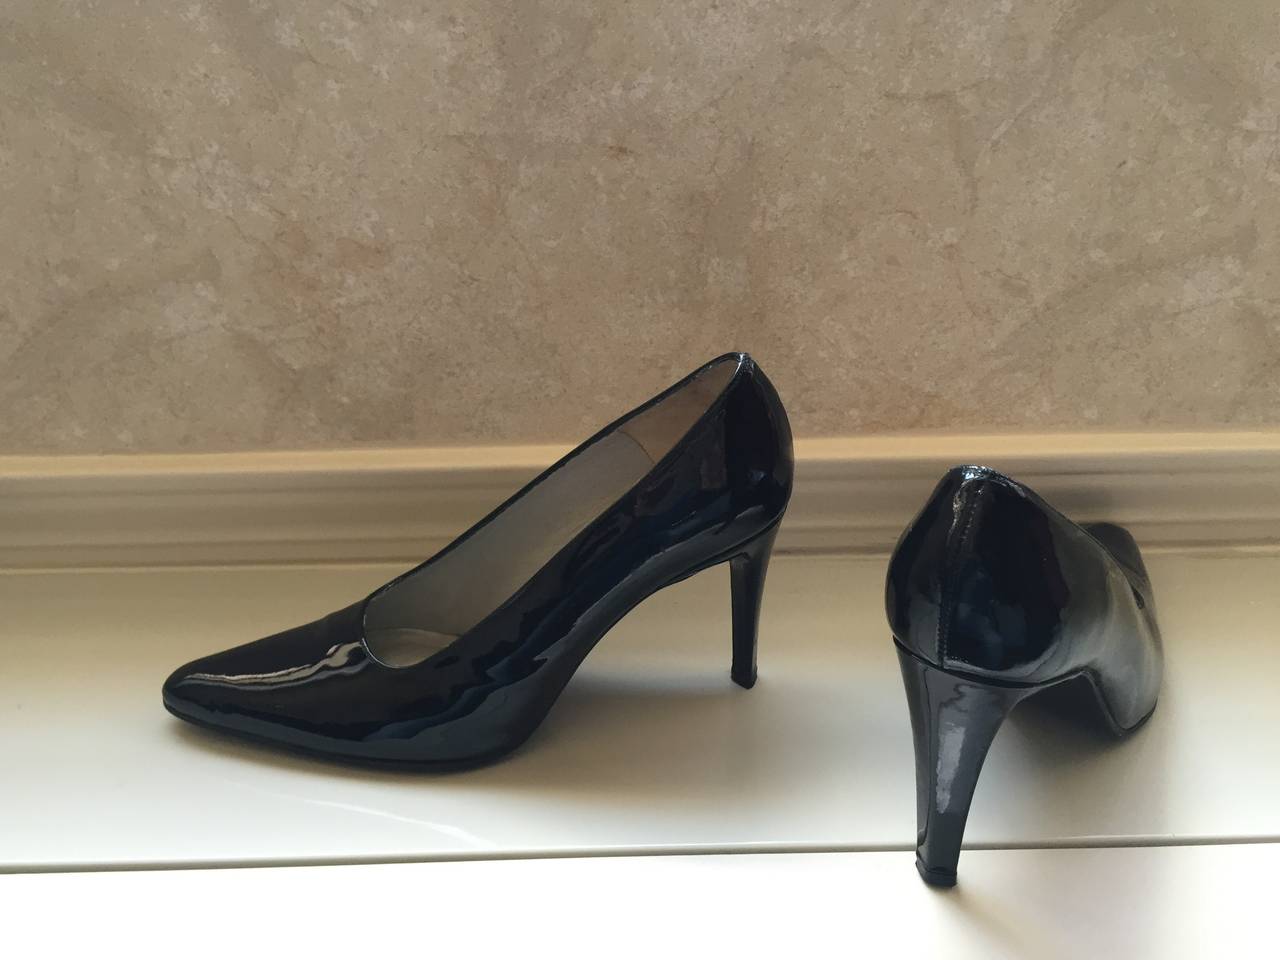 Vintage Carlos Falchi Classic Black Patent Leather Pumps / Heels / Shoes Size 8 For Sale 1